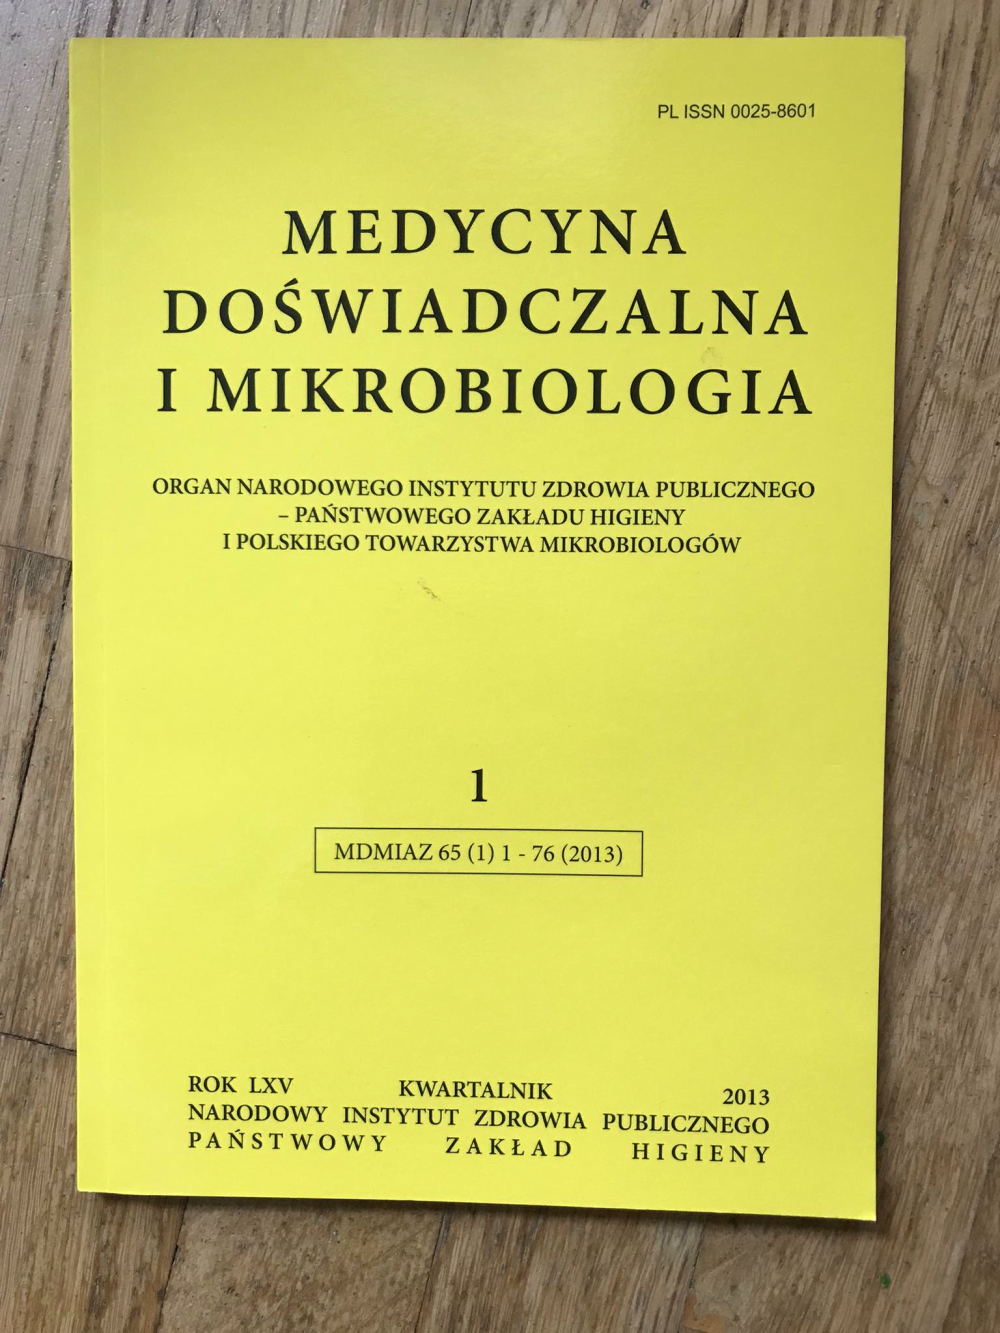 Publikacja medycyna doświadczalna i mikrobiologia kwartalnik